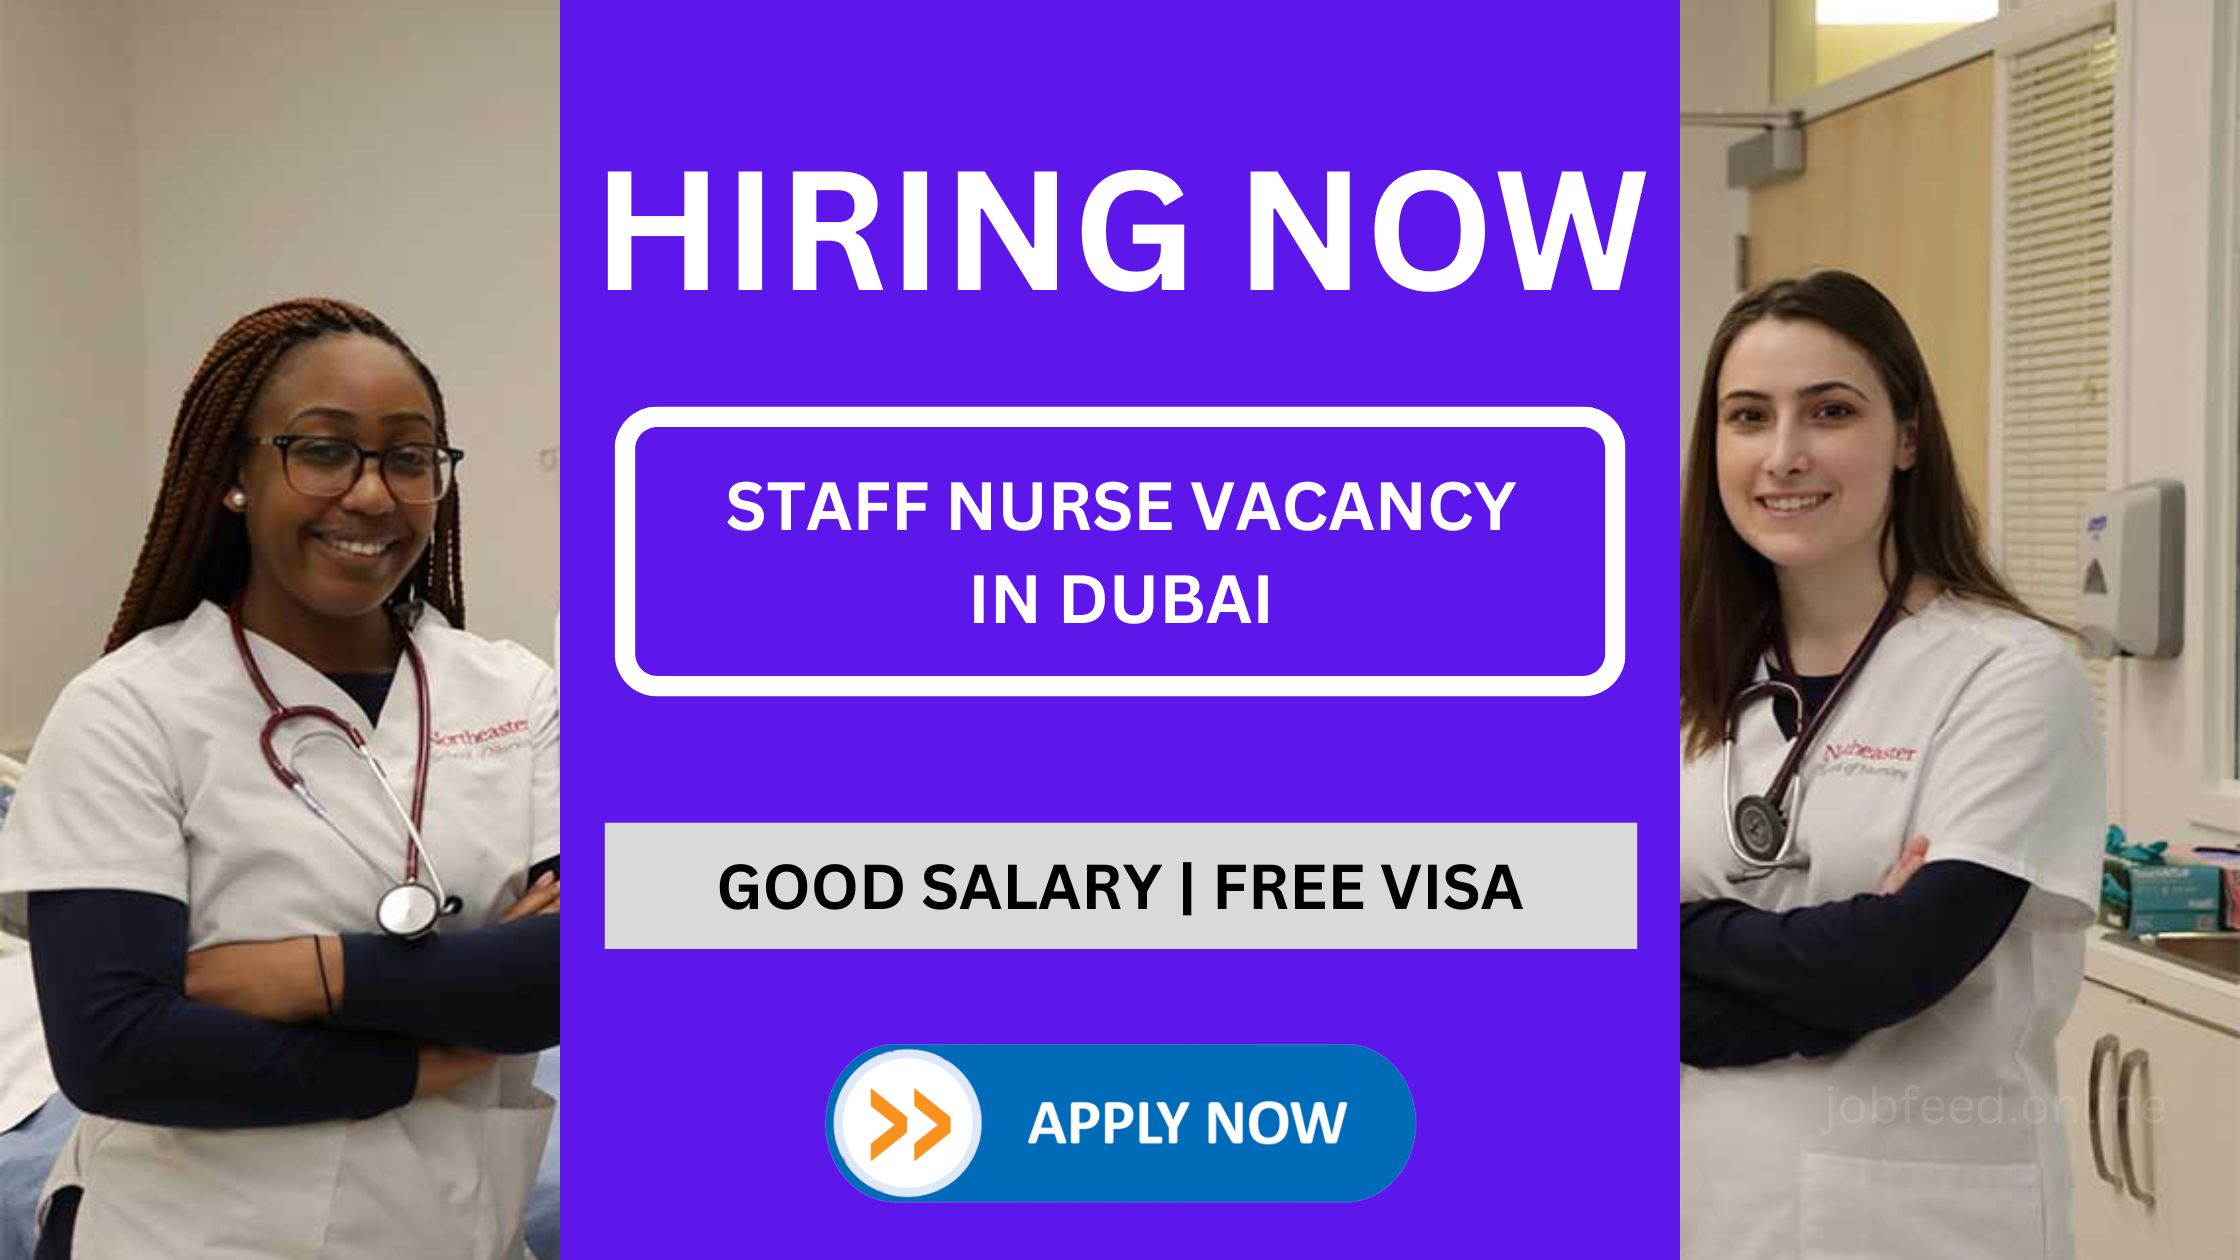 दुबई में स्टाफ नर्स की रिक्तियां